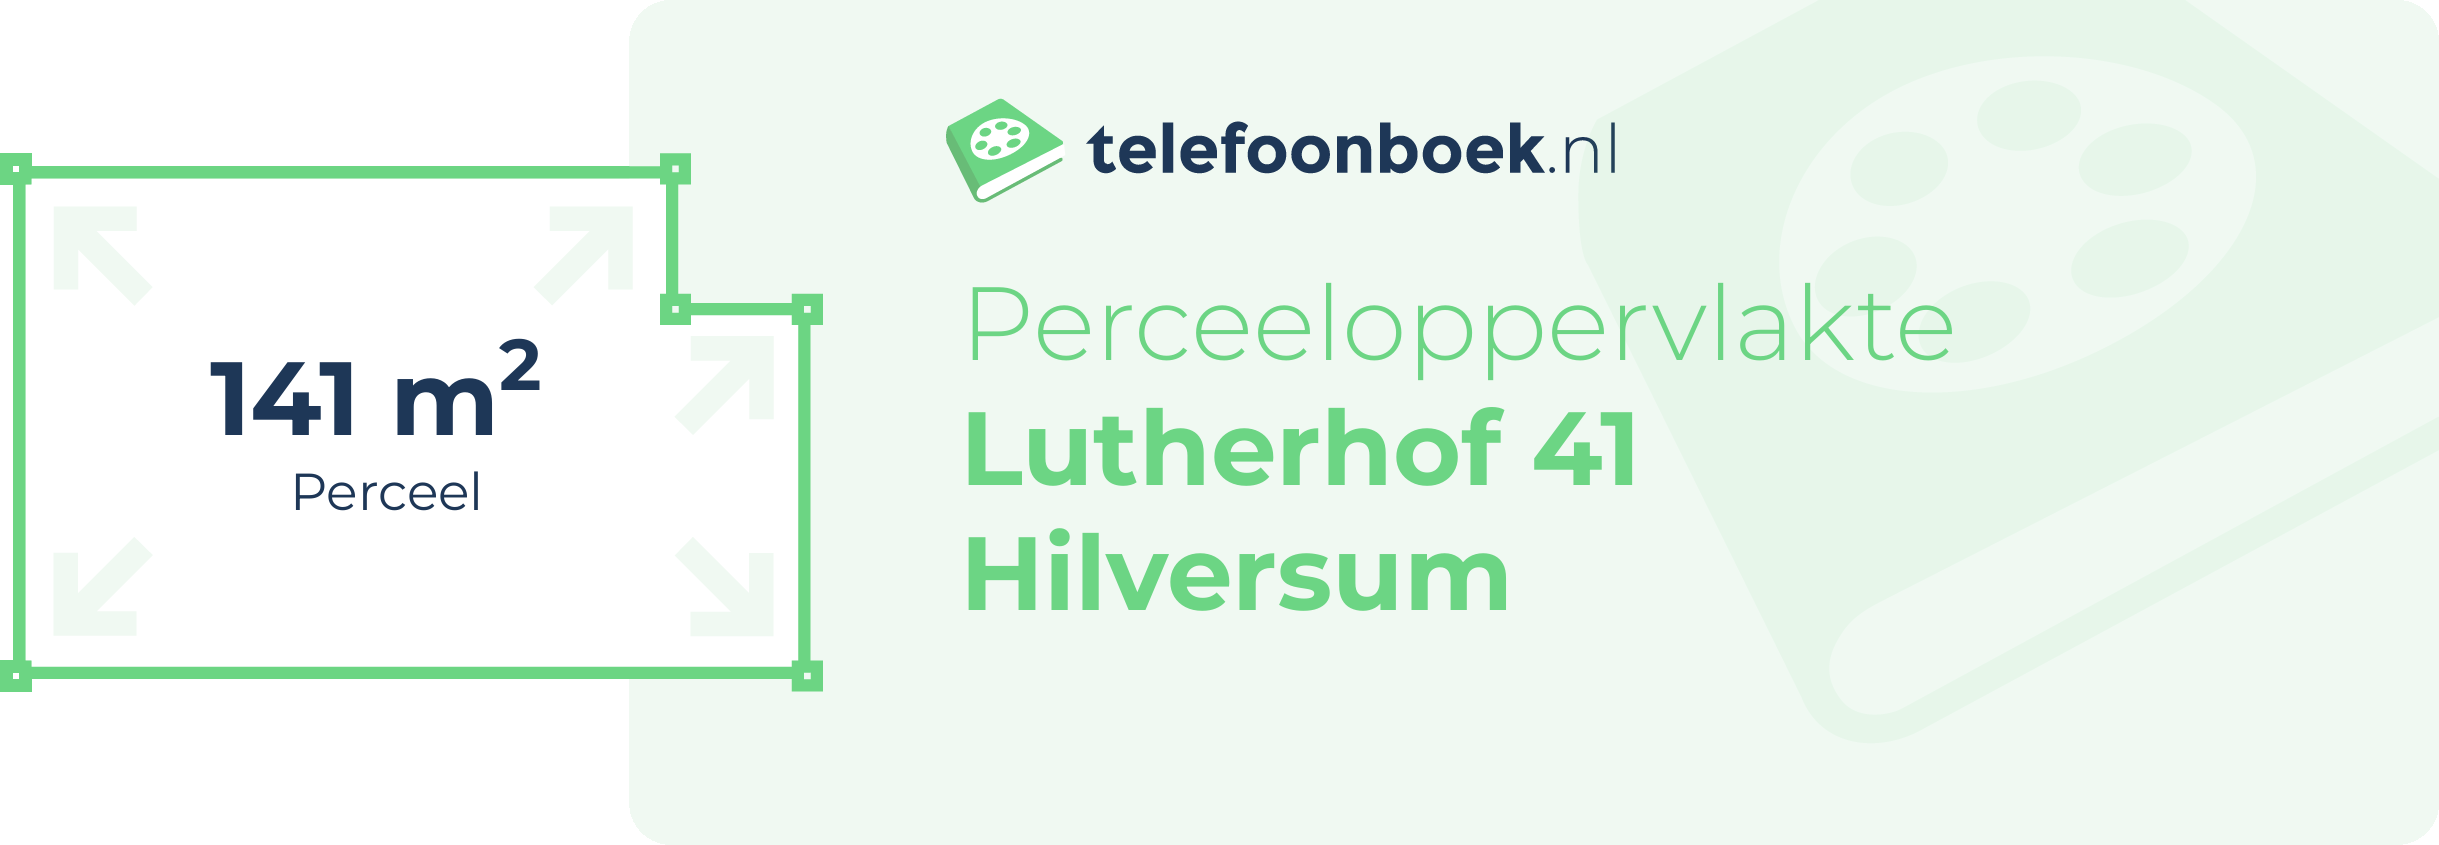 Perceeloppervlakte Lutherhof 41 Hilversum